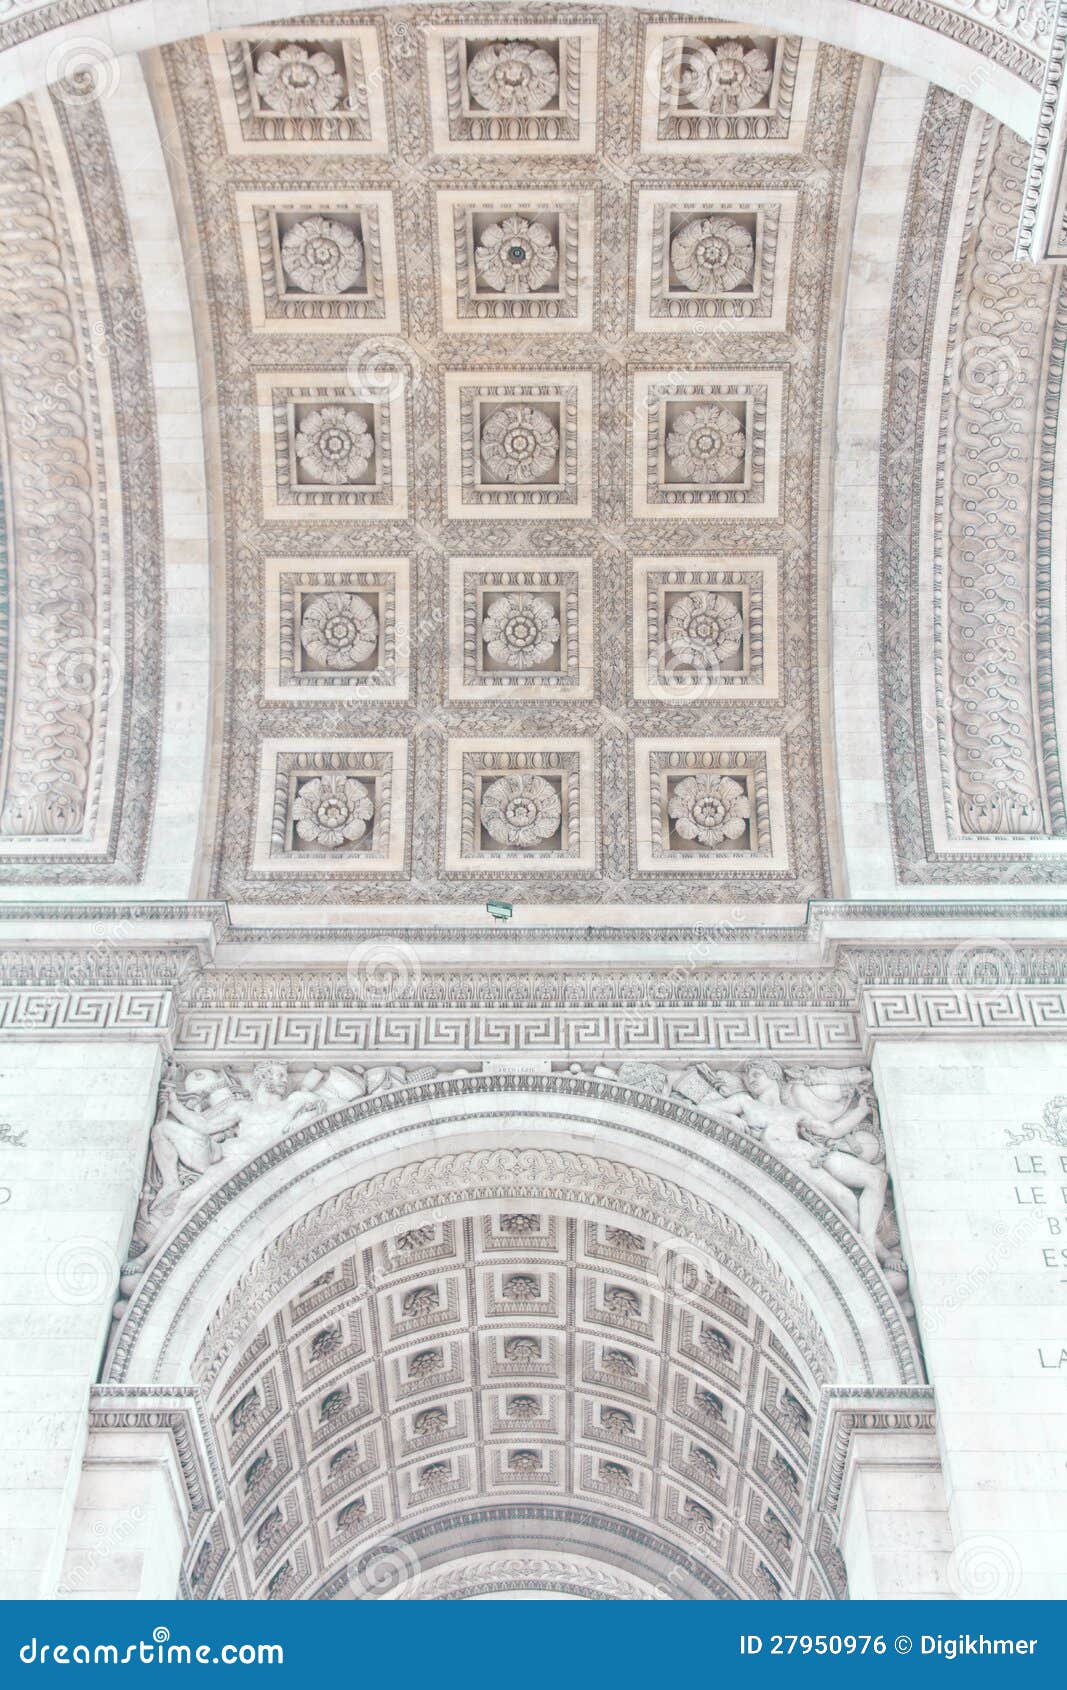 arch of triumph of paris, france